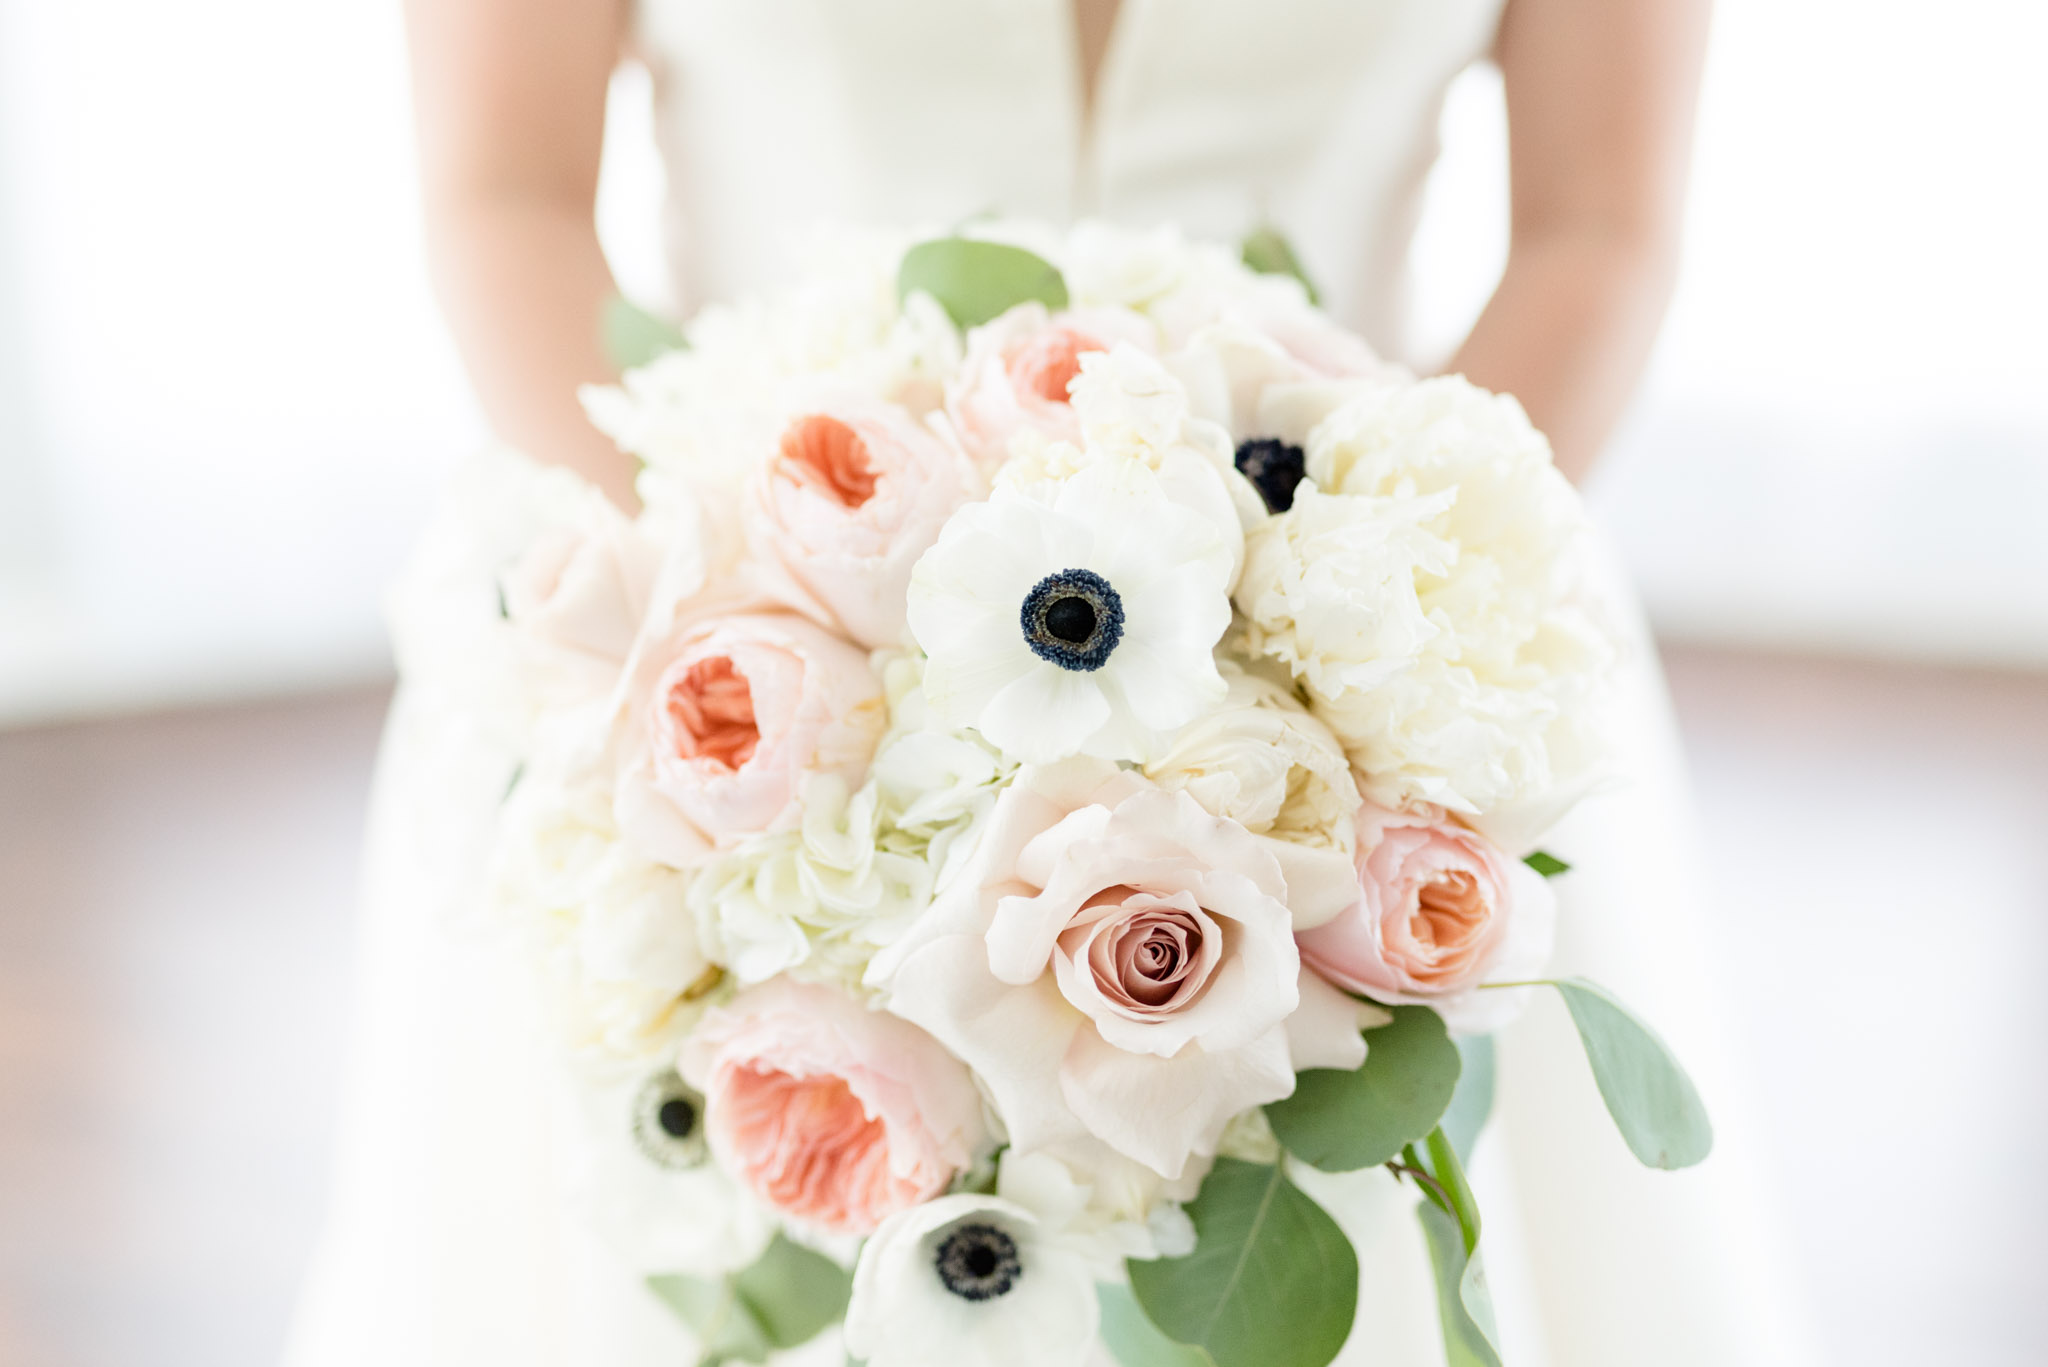 Closeup of bridal bouquet.